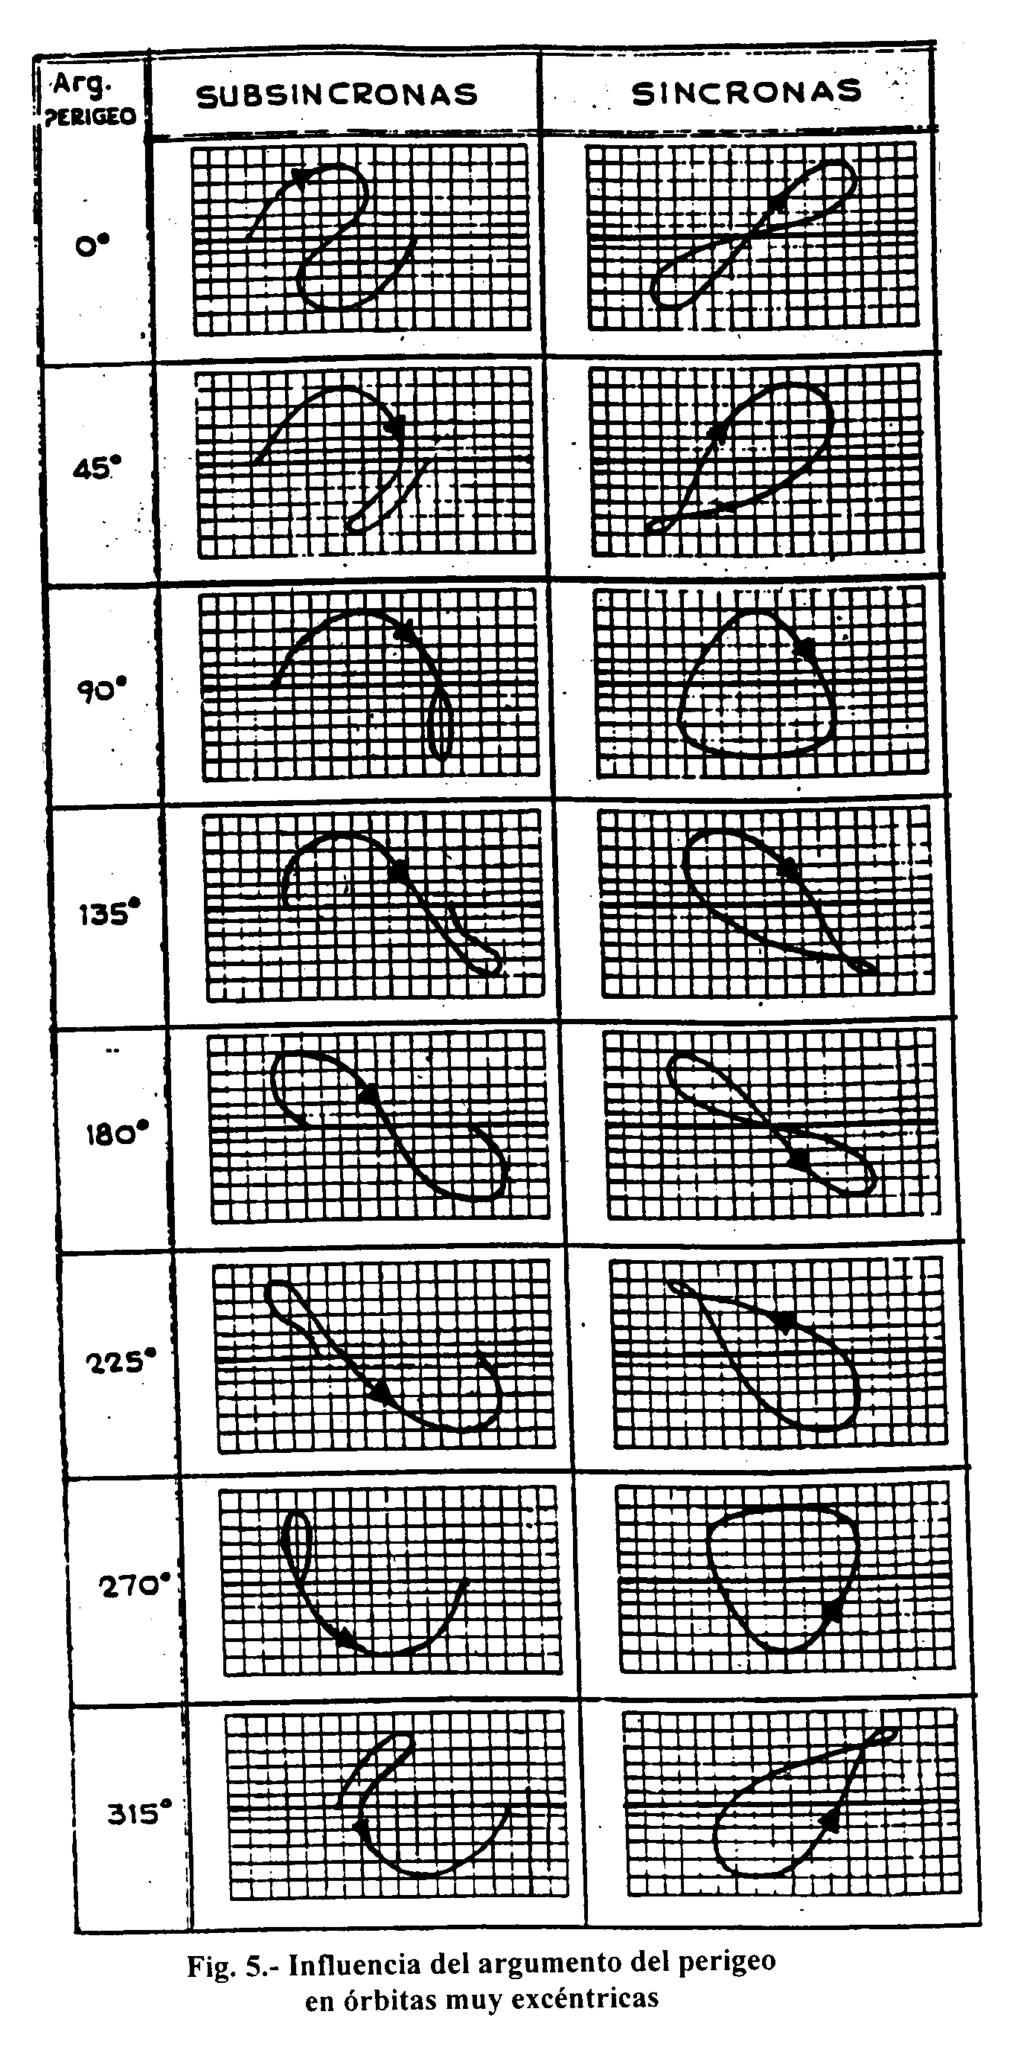 Trazas (Groundtracks) Cobertura Visibilidad Cálculo de la Traza III En el caso excéntrico, sería necesario emplear la Ecuación de Kepler para obtener θ en cada instante.